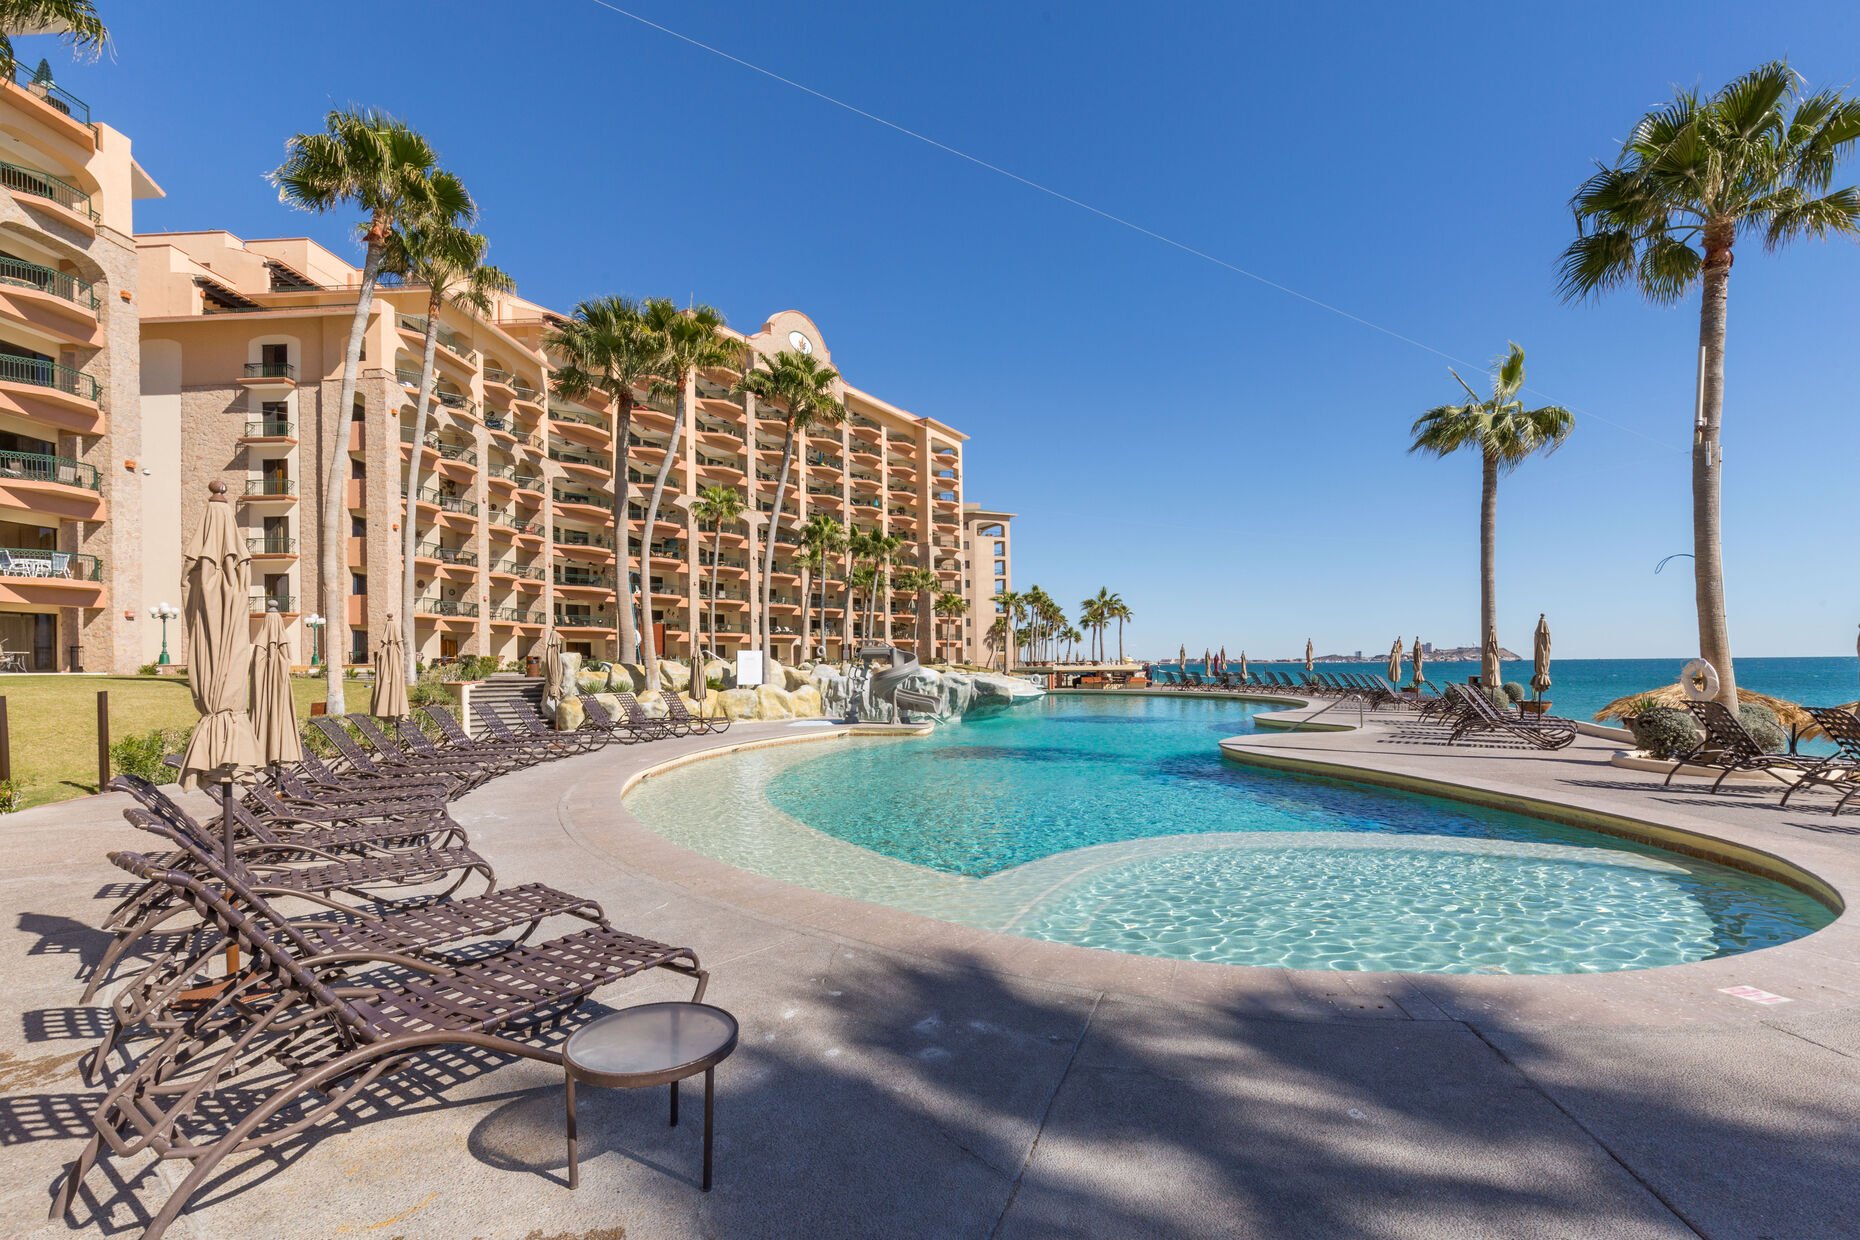 Sonoran Sea Resort has 208 total units